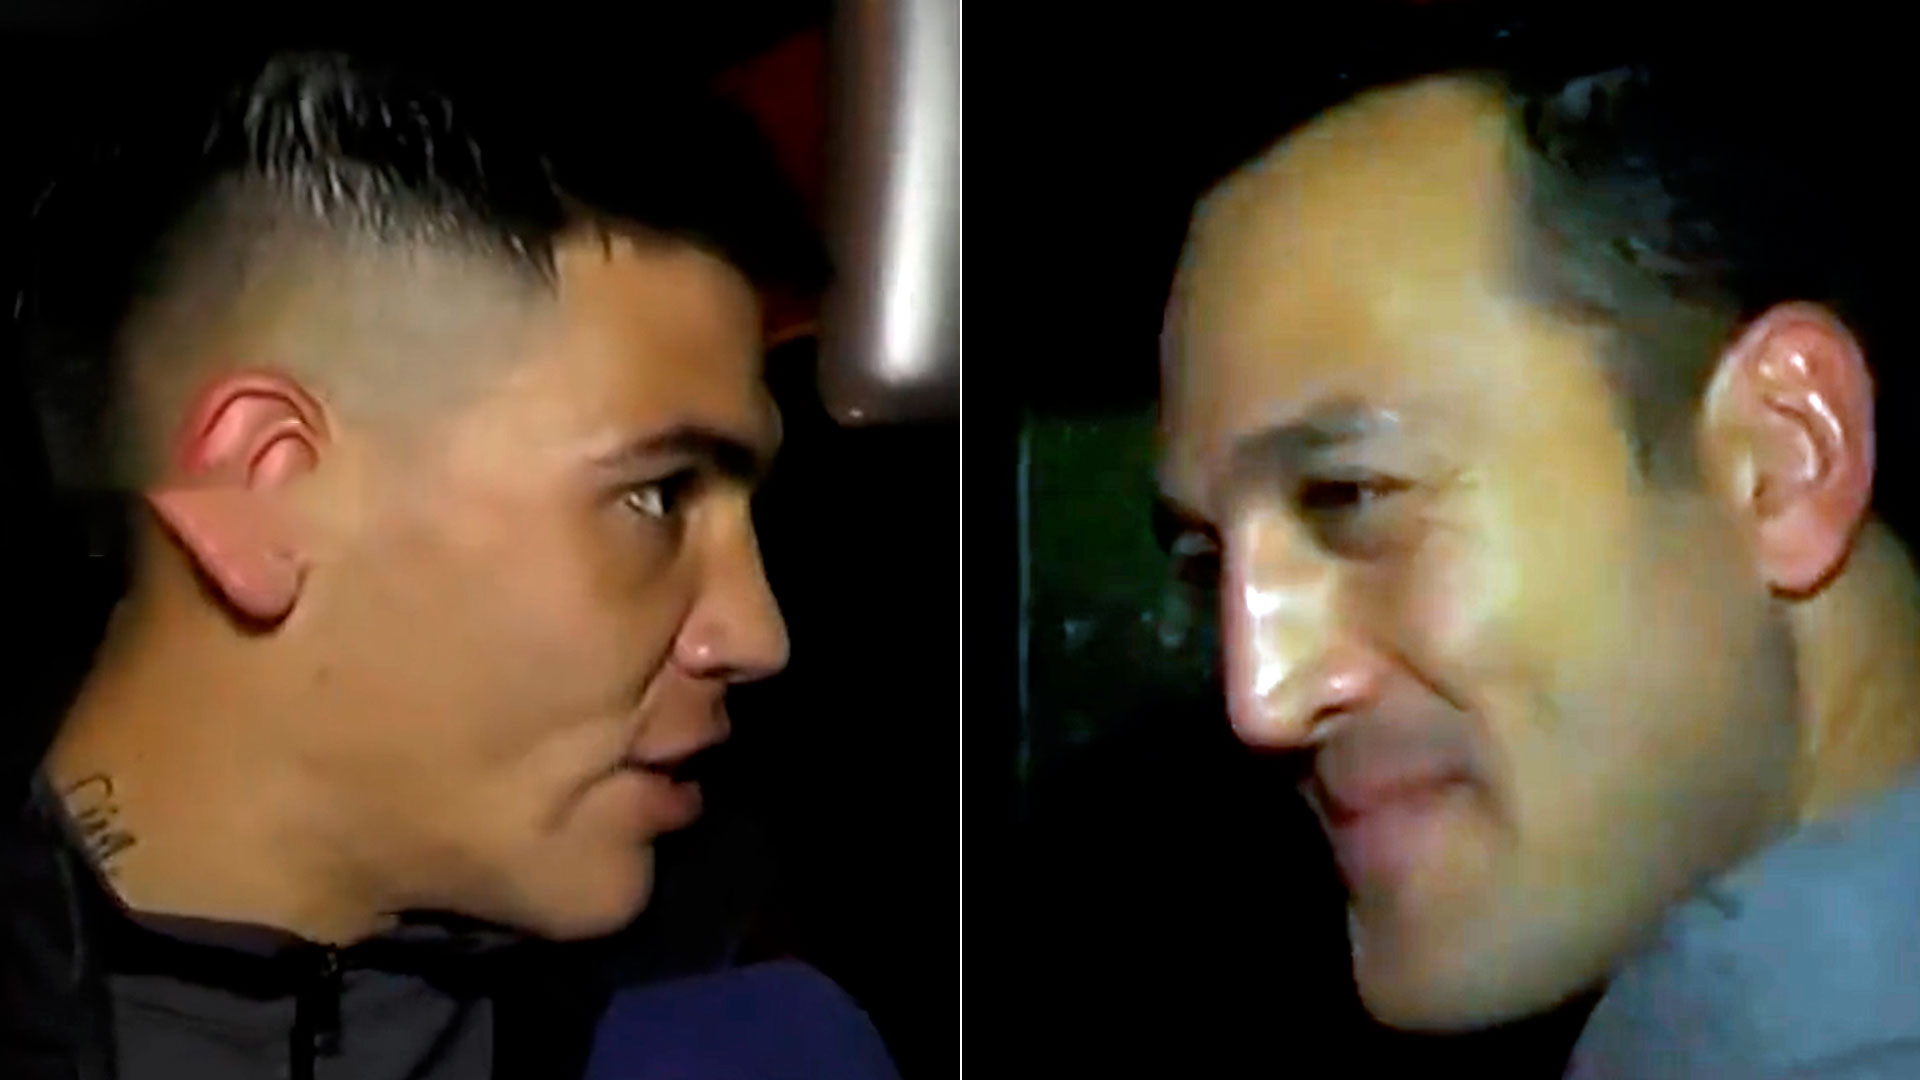 El árbitro Espinoza y el futbolista Gustavo Canto se cruzaron en una nota tras la tensa escena en pleno partido: “La próxima lo empujo”      